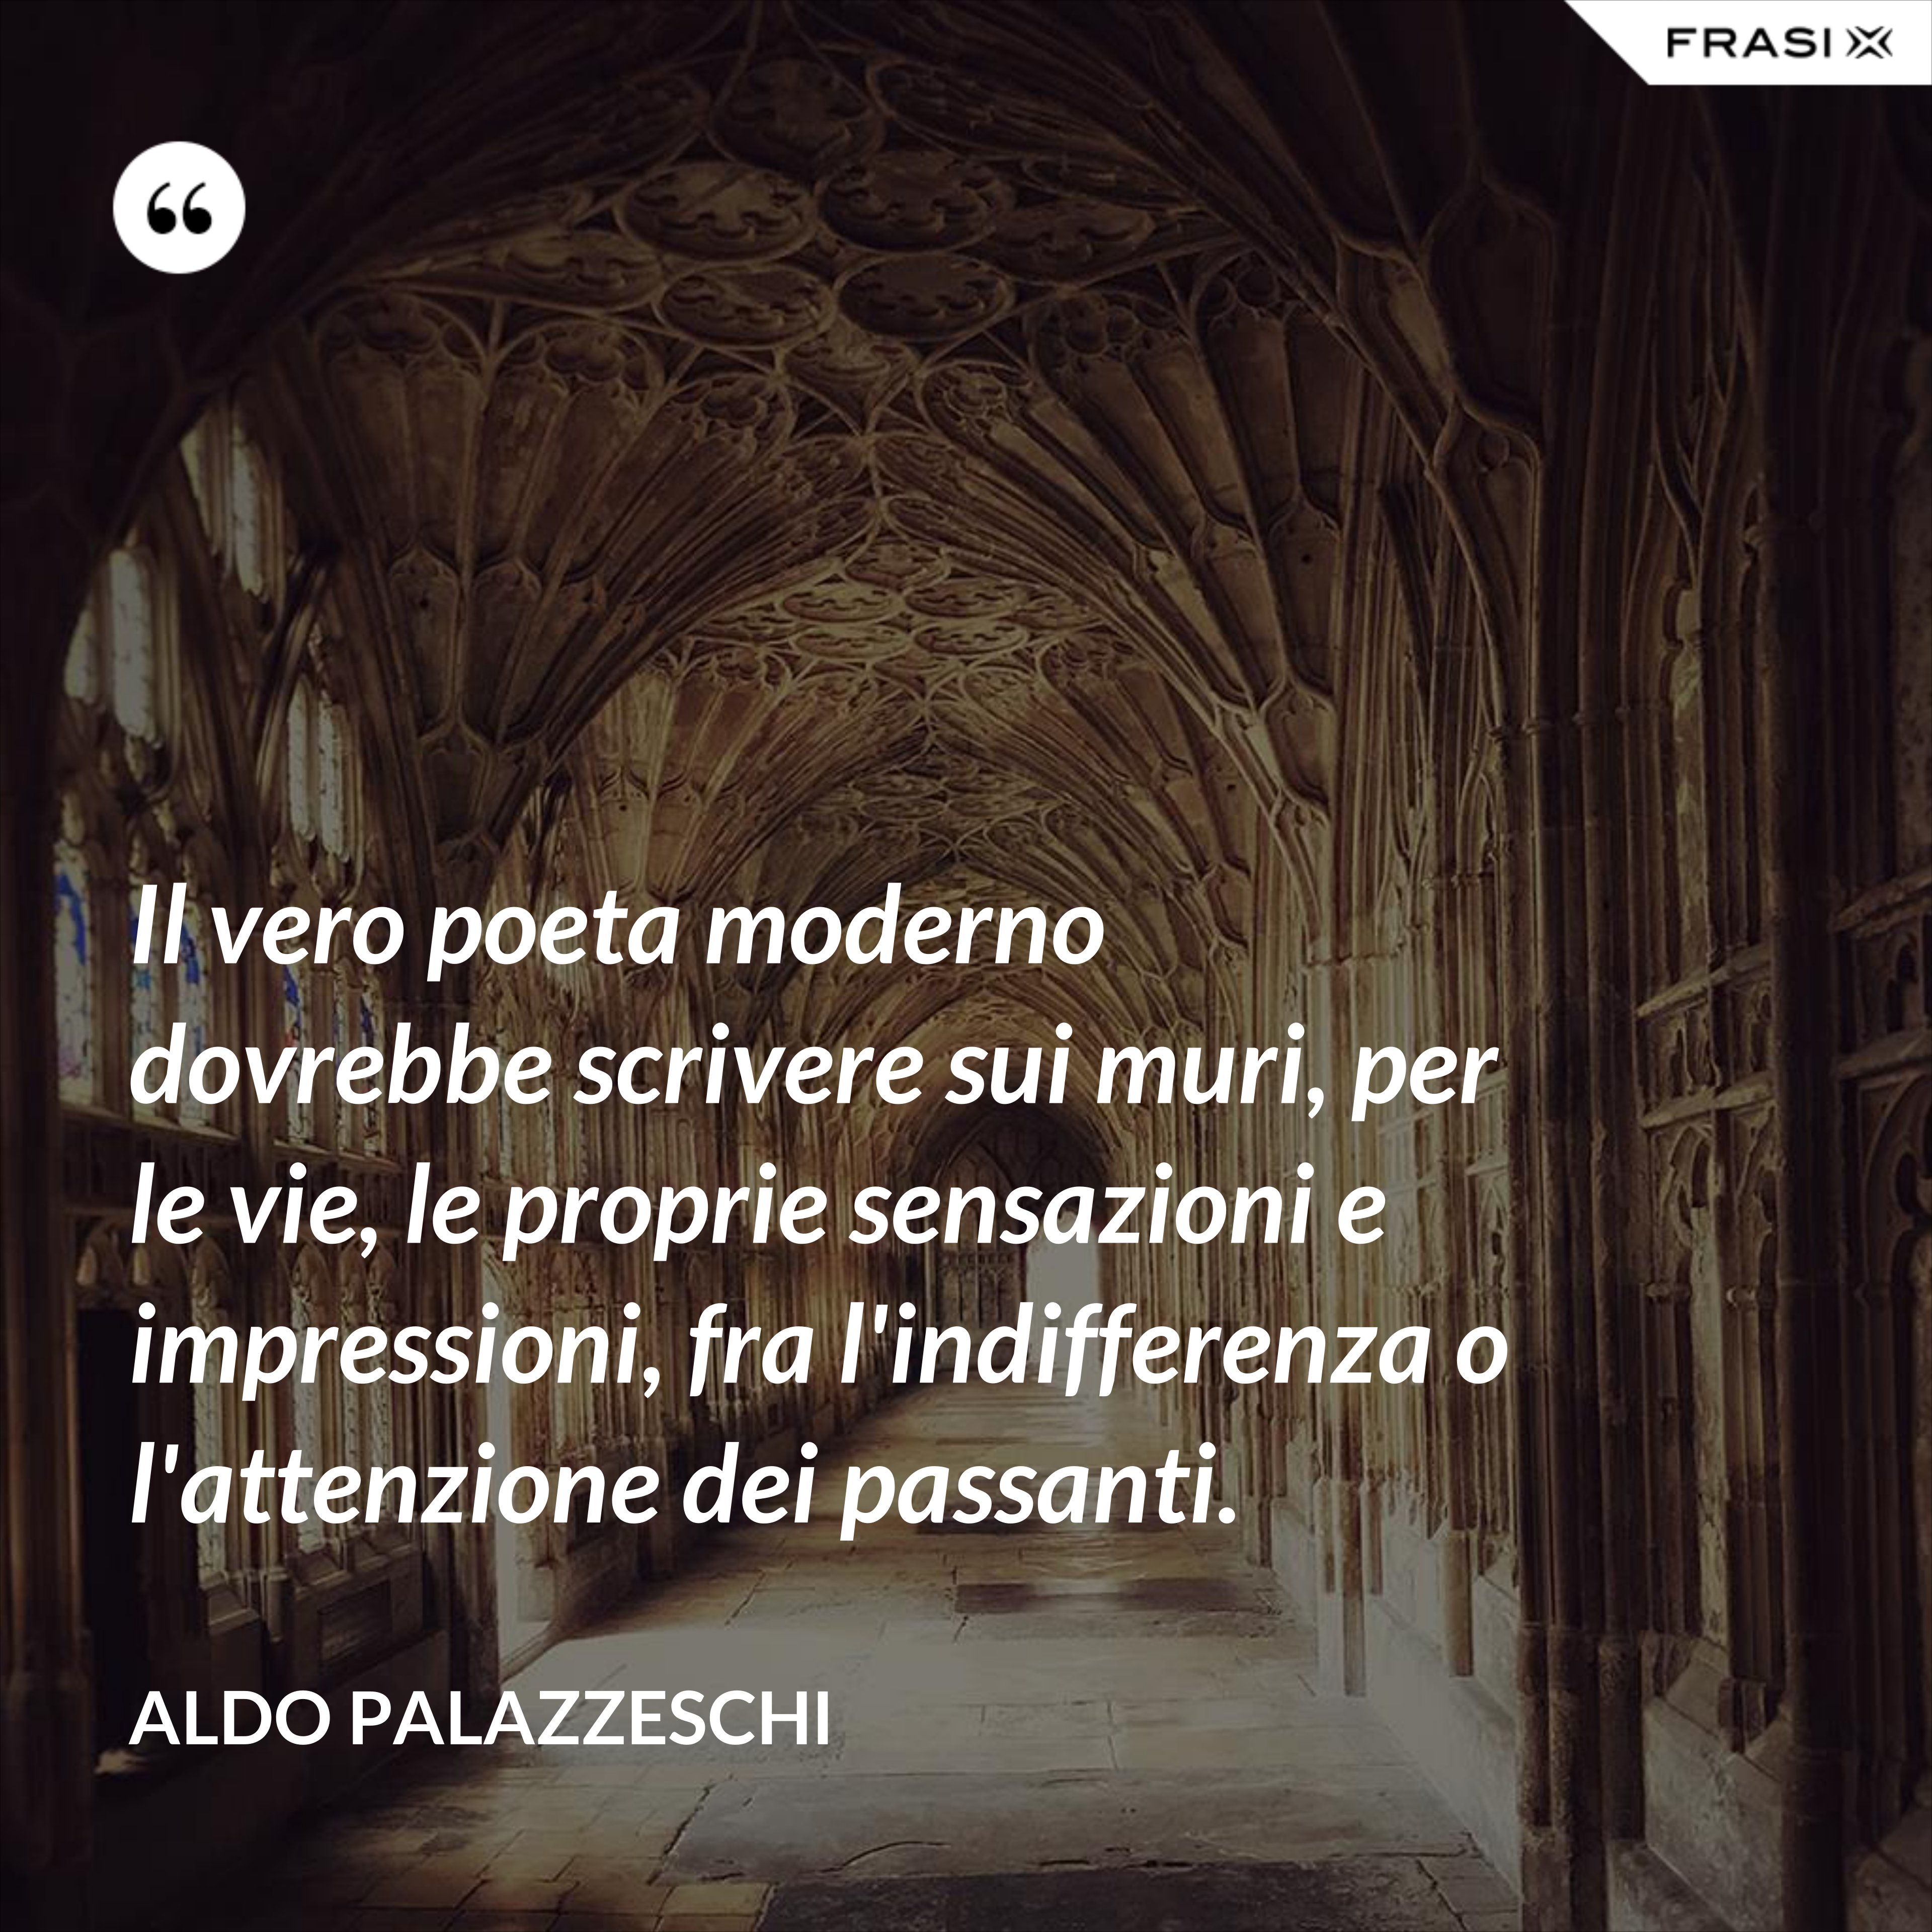 Il vero poeta moderno dovrebbe scrivere sui muri, per le vie, le proprie sensazioni e impressioni, fra l'indifferenza o l'attenzione dei passanti. - Aldo Palazzeschi